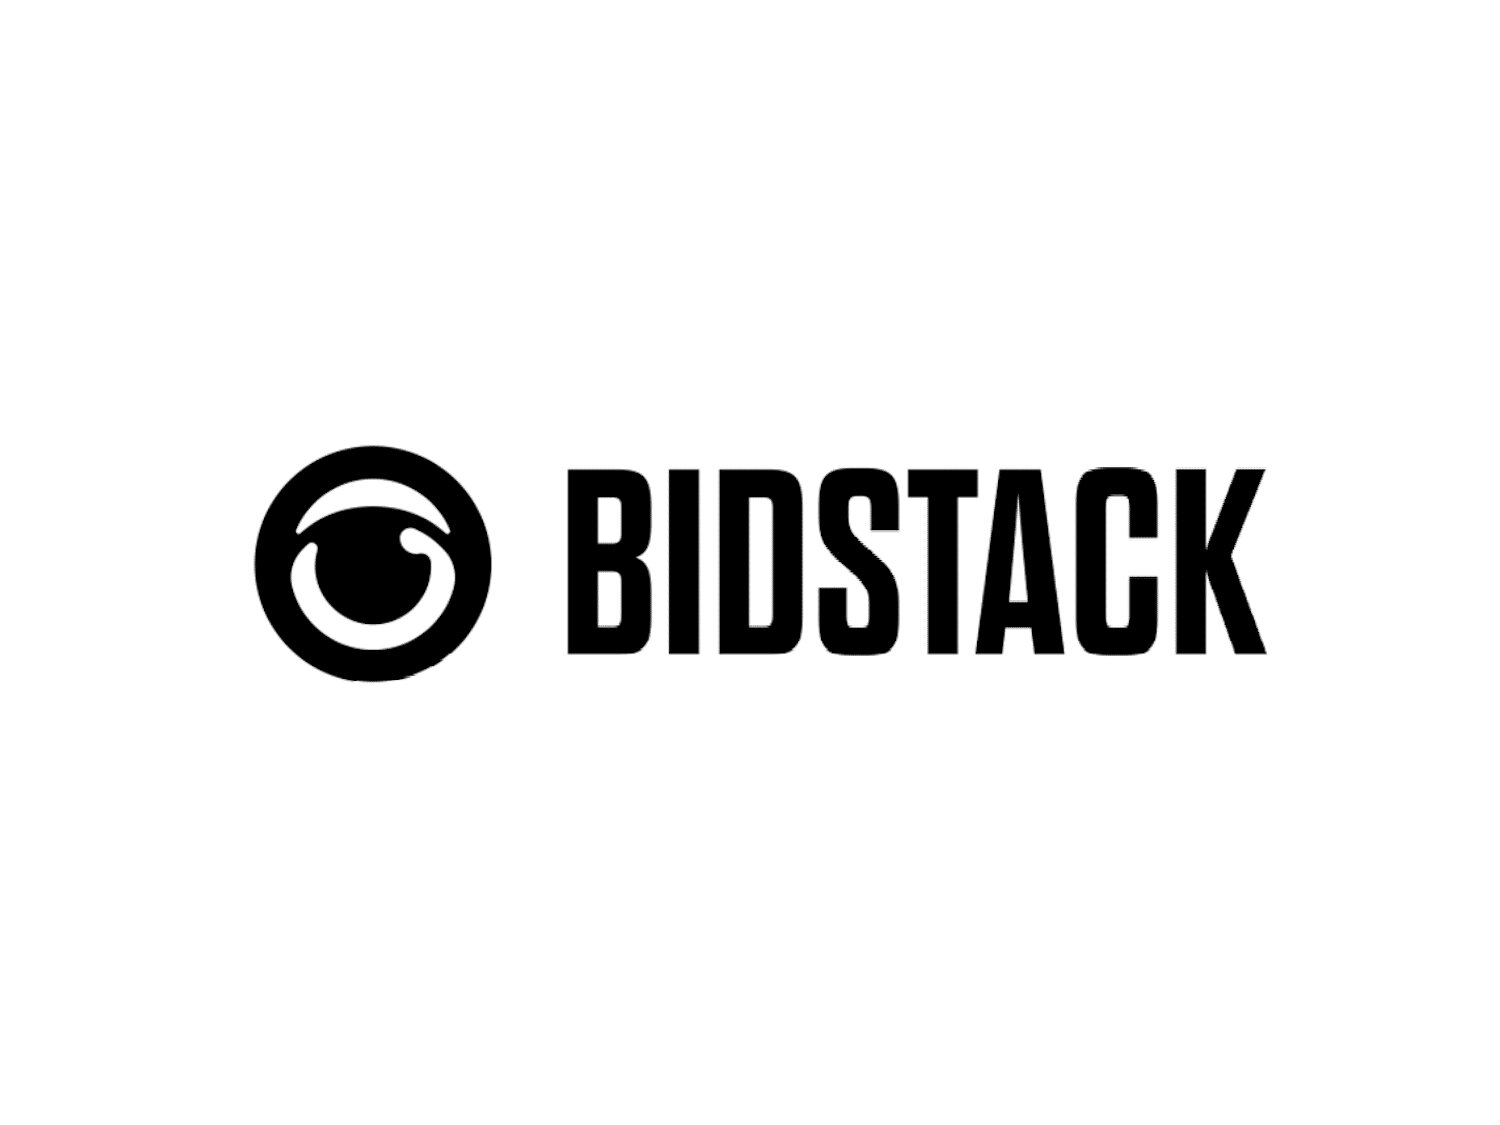 In-game advertising platform Bidstack raises $11 million